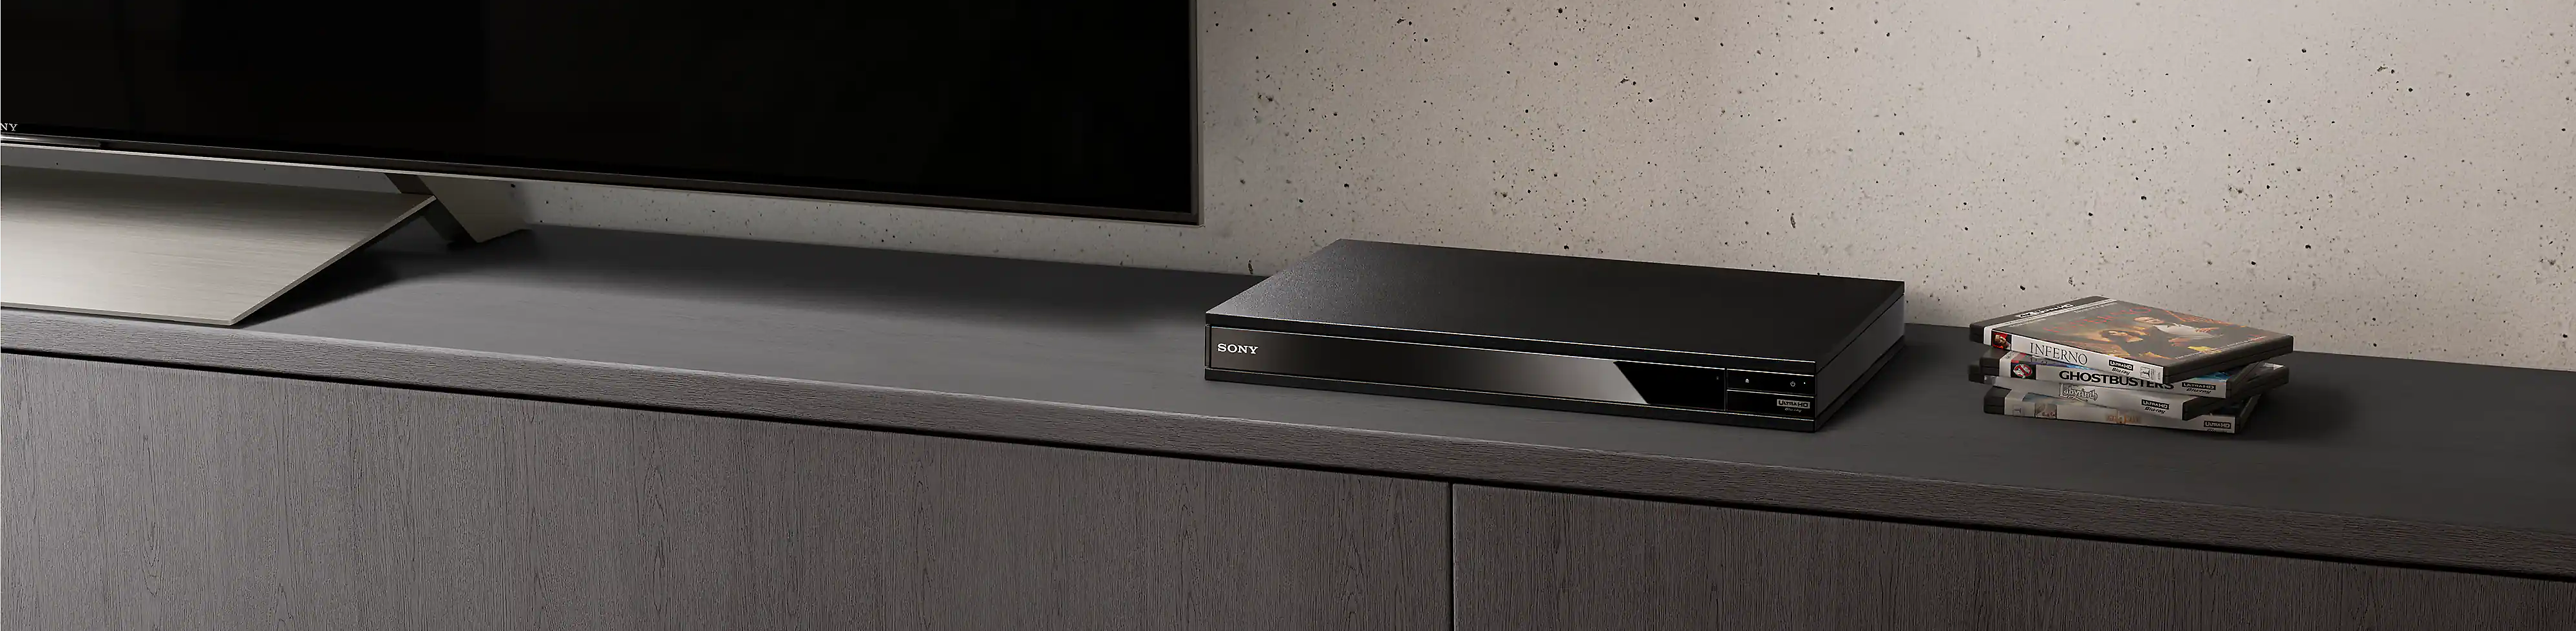 Između gomile blu-ray diskova i crnog televizora se vidi Blu-ray Disc plejer crne boje.